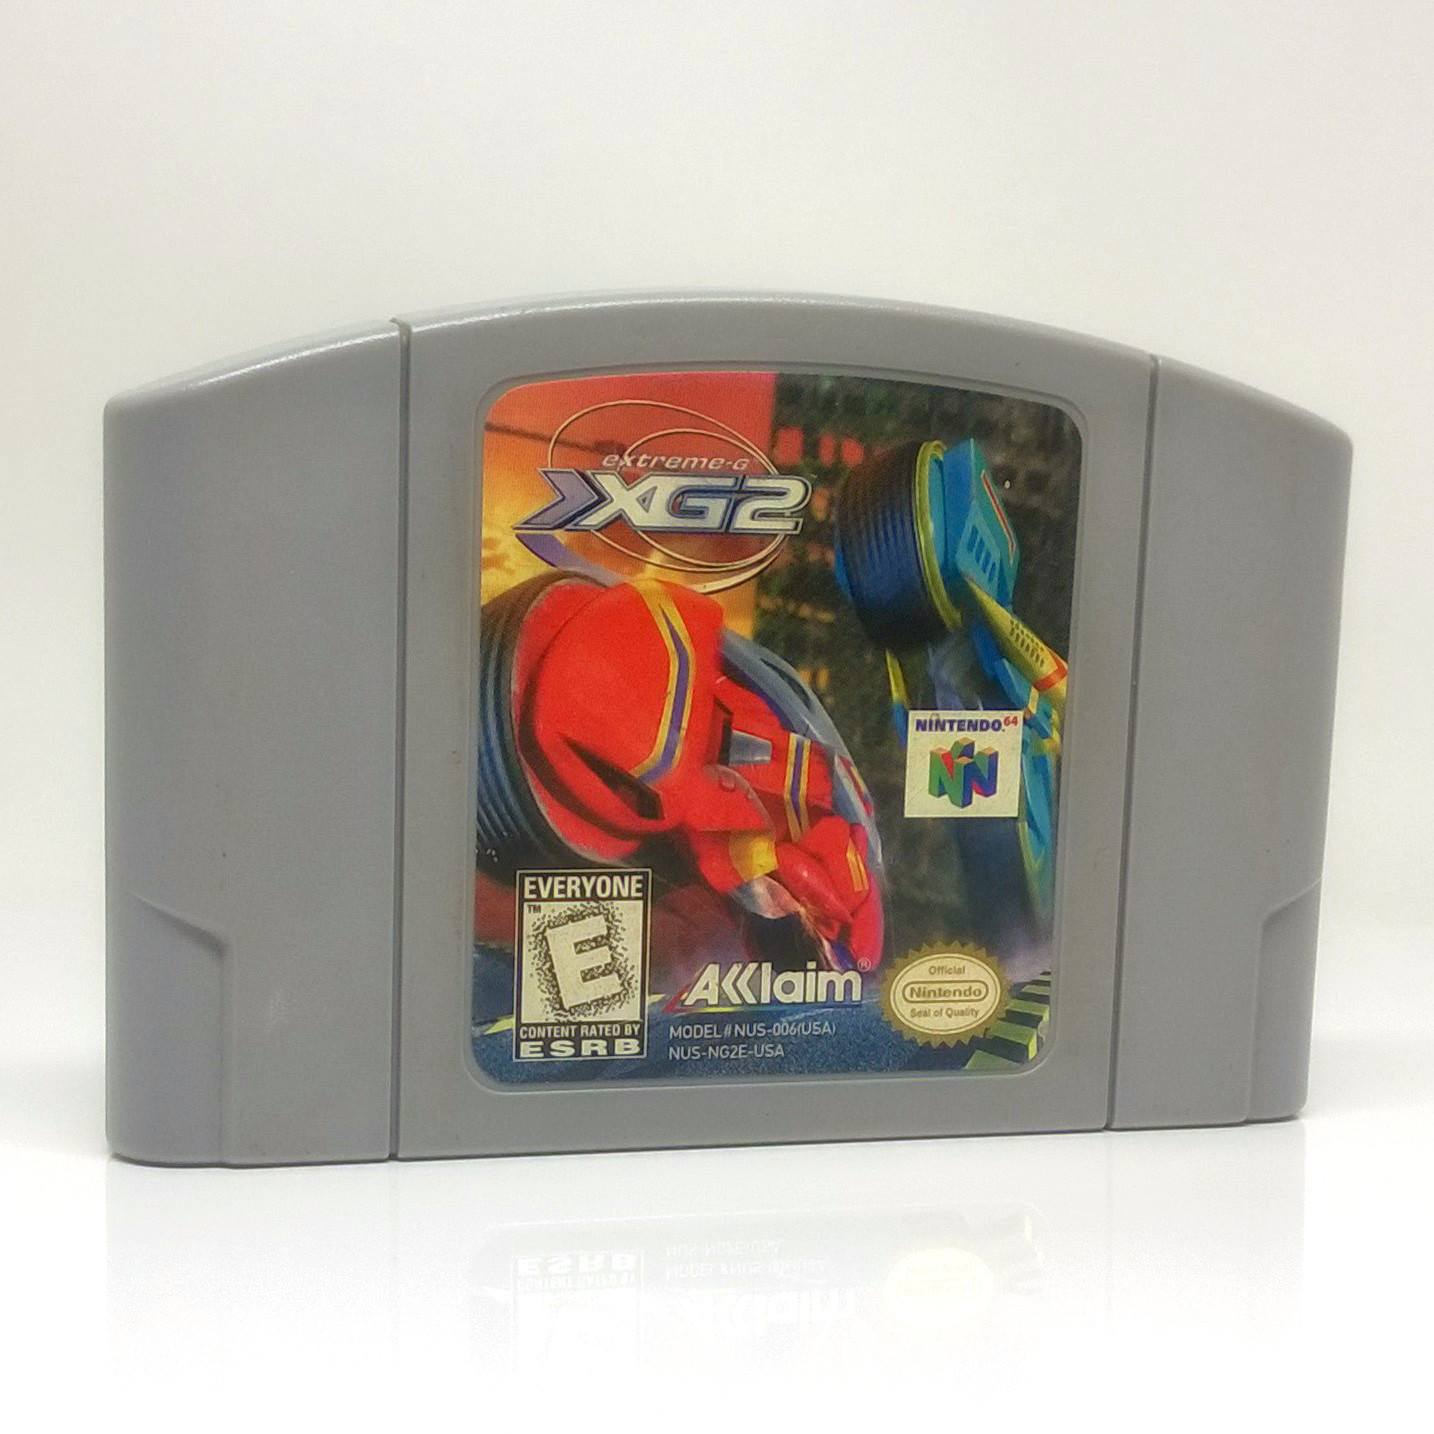 Extreme-G: XG2 Nintendo 64 N64 Game